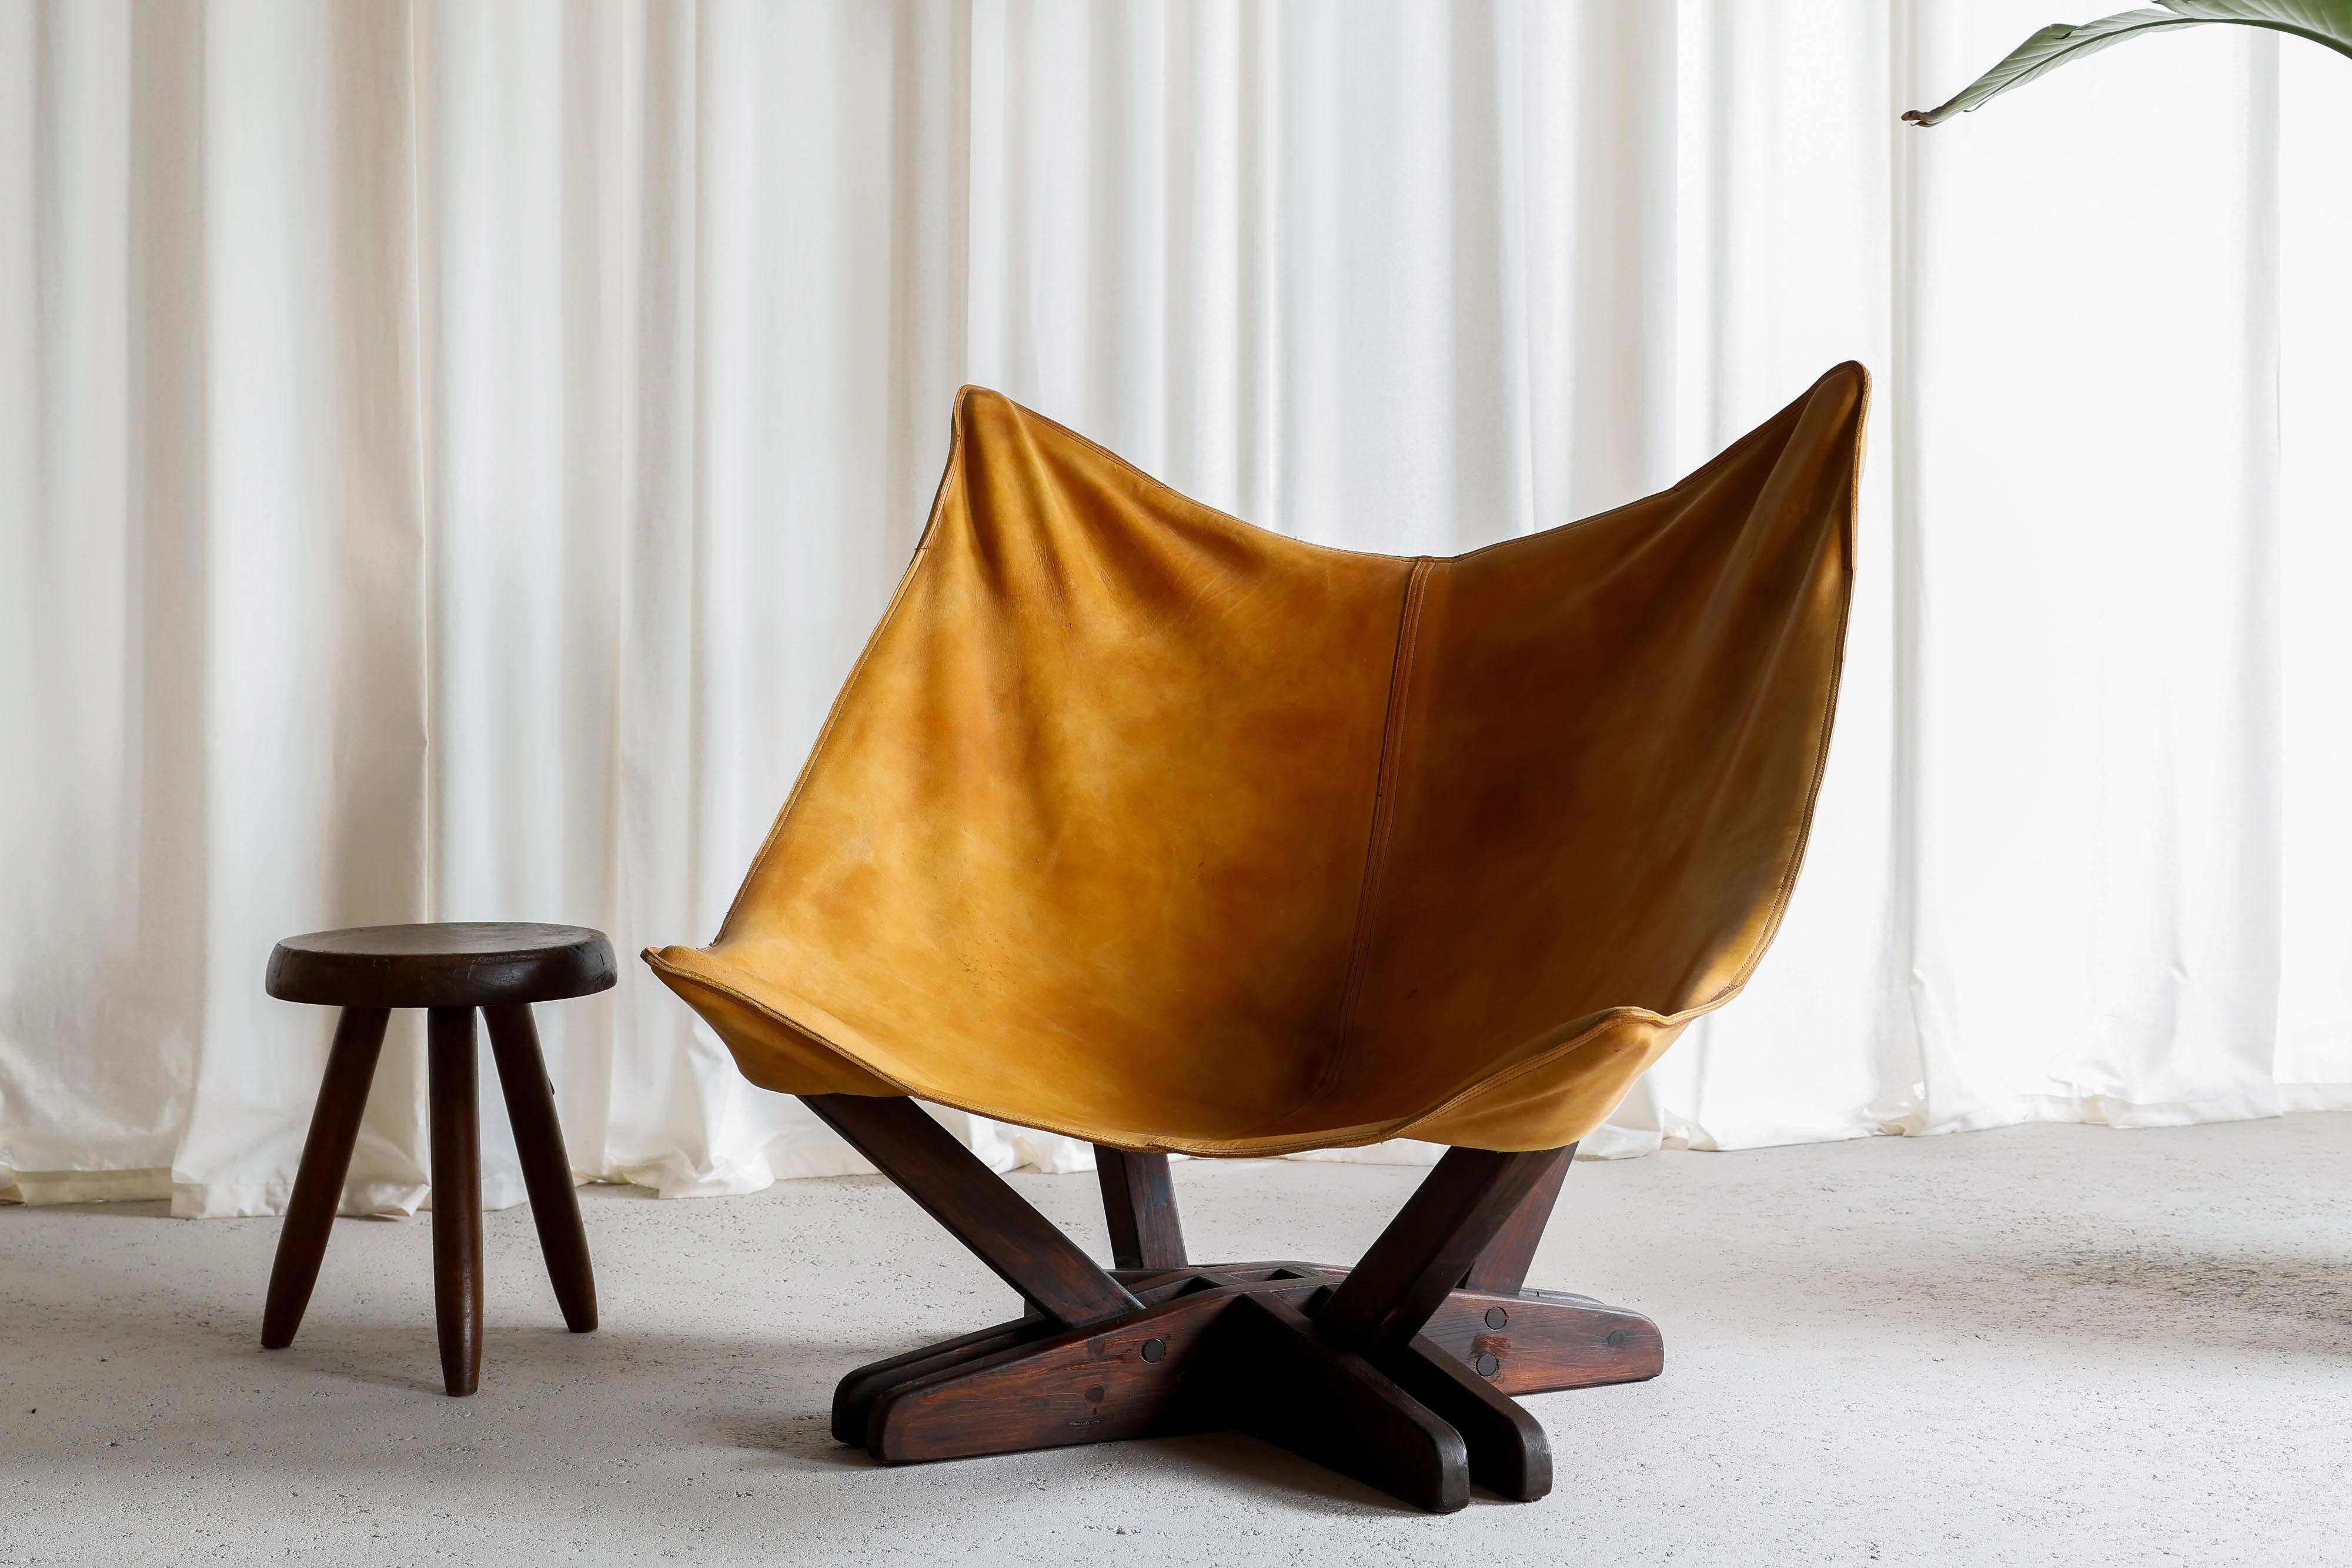 Schöner Schmetterlingsstuhl aus dunkelbraun gebeiztem Kiefernholz und Leder, hergestellt 1960 in Schweden. Auch wenn wir den Designer nicht kennen, spricht die erstklassige Qualität des Stuhls für sich selbst. Er besteht aus einer Mischung aus